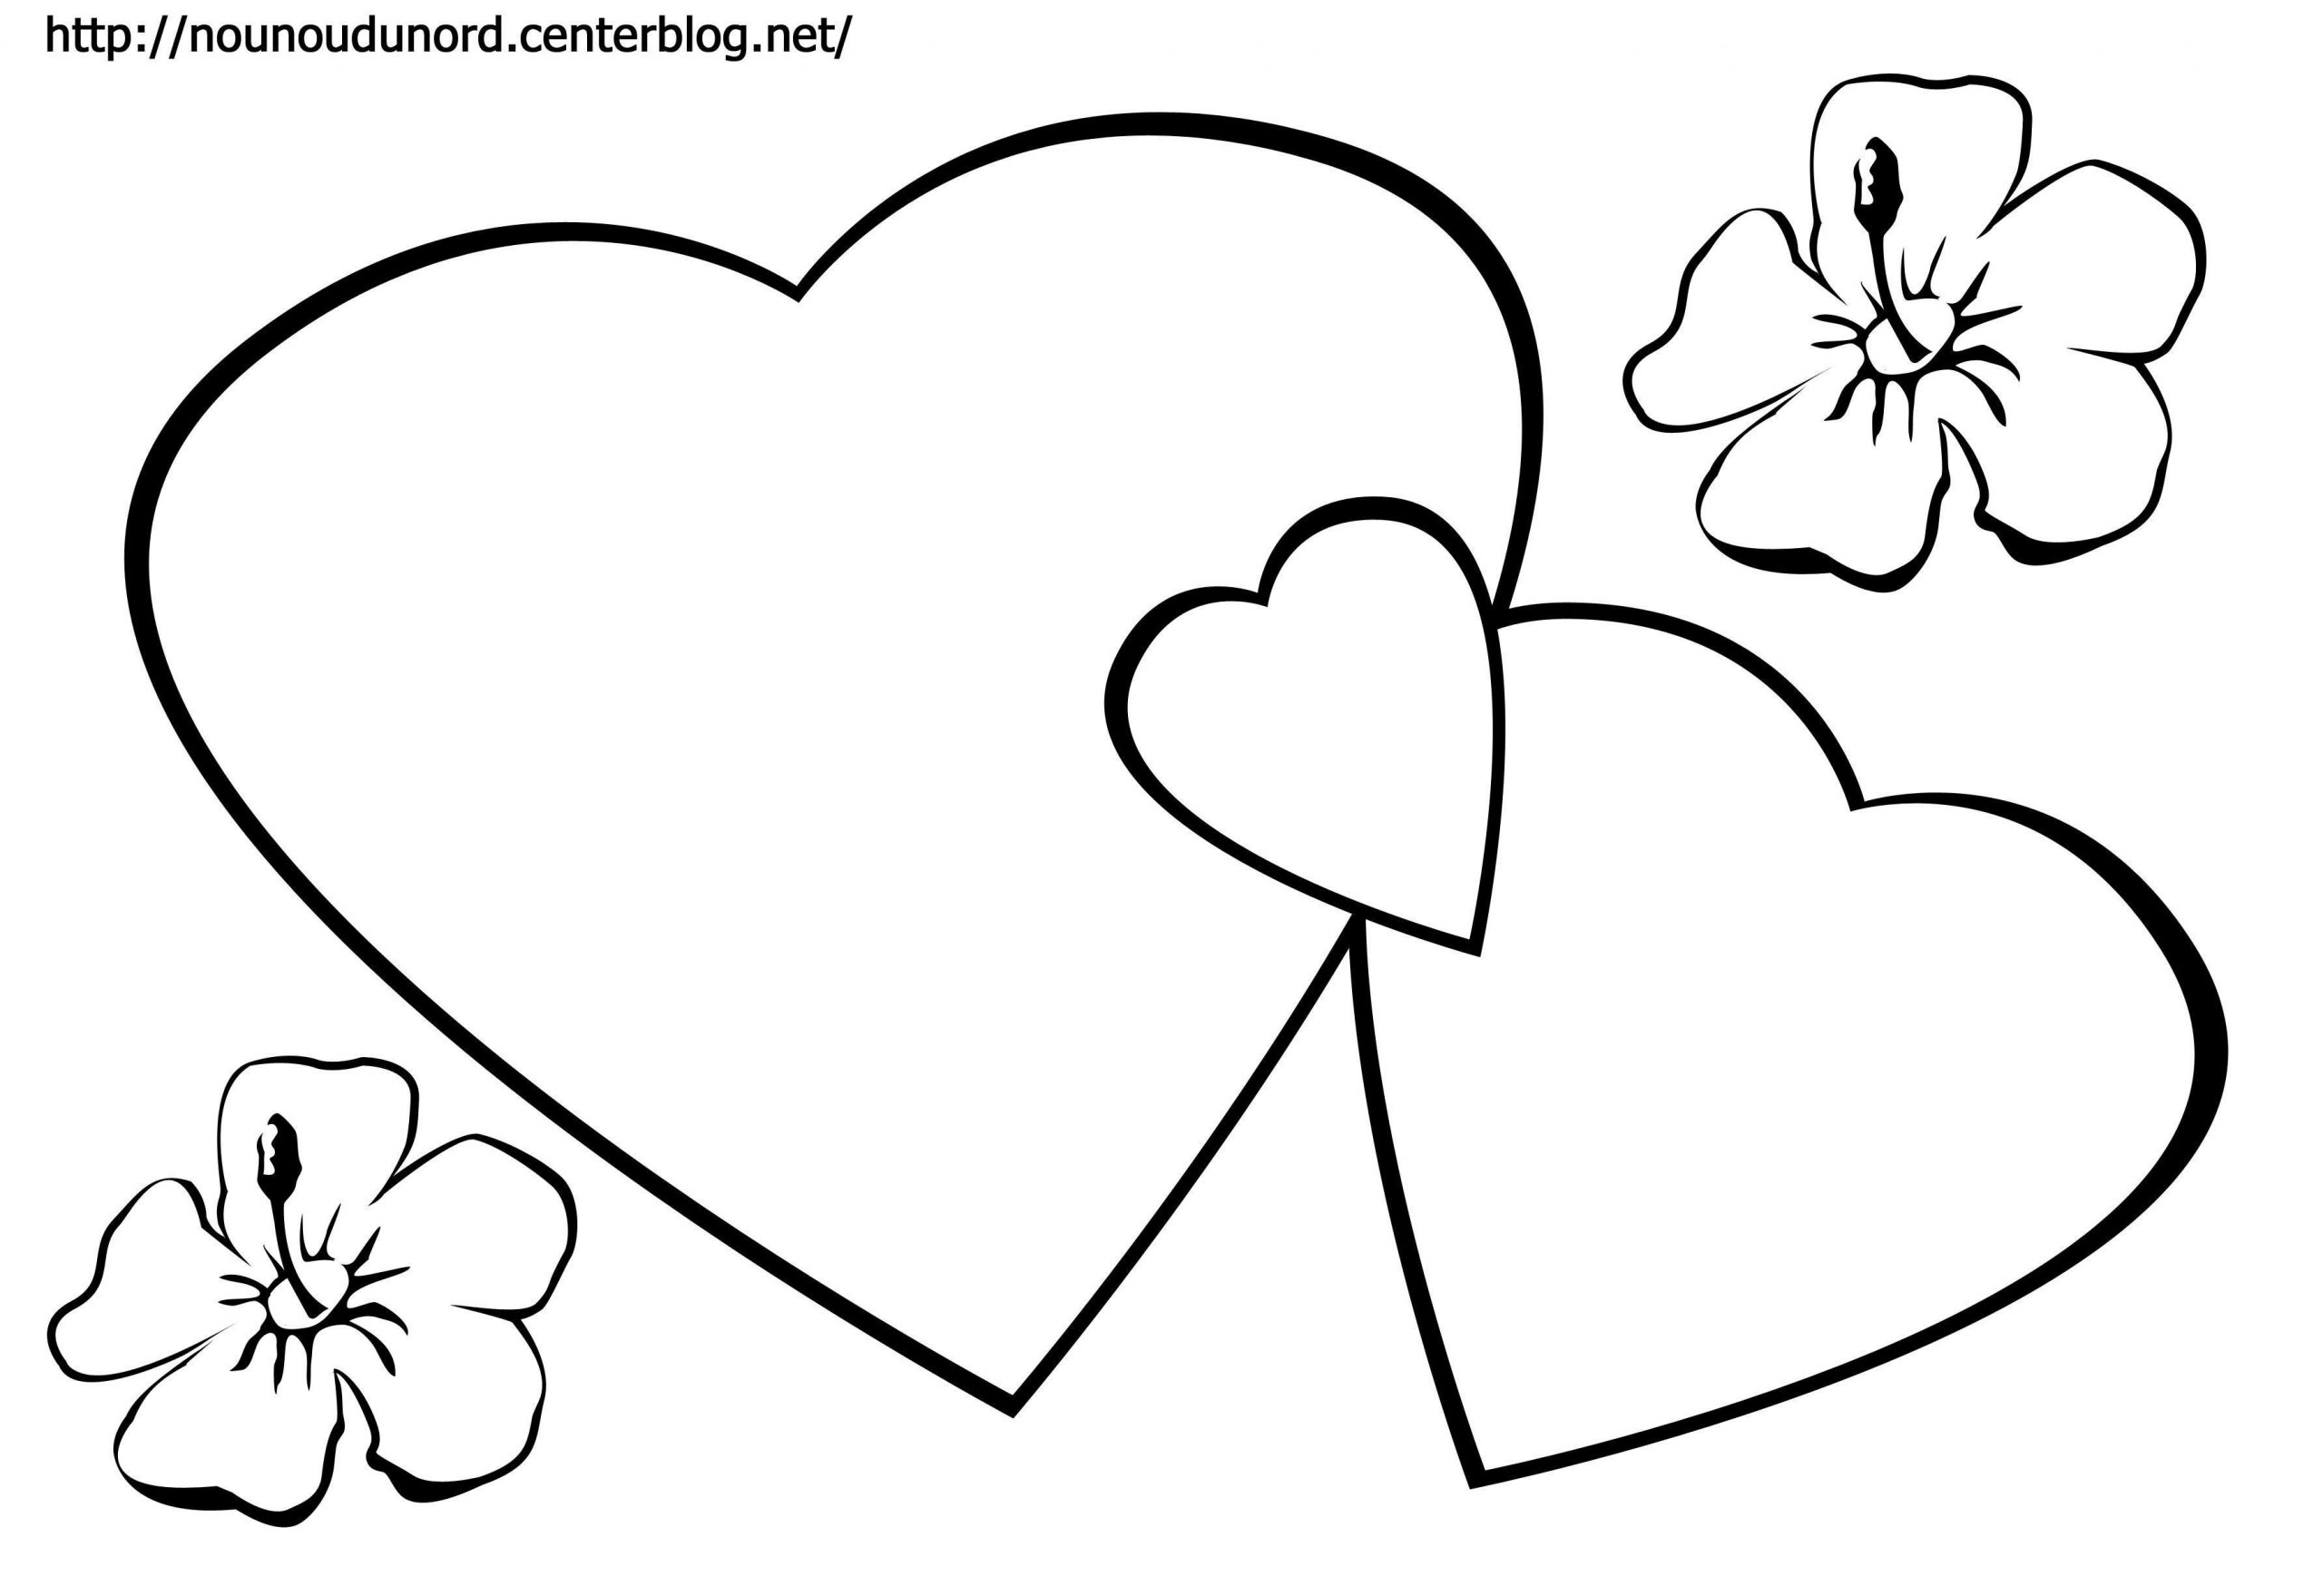 Coloriage Imprimer Coeur Pour Maman - Coloriage Imprimer intérieur Coloriage J&amp;#039;Aime Maman